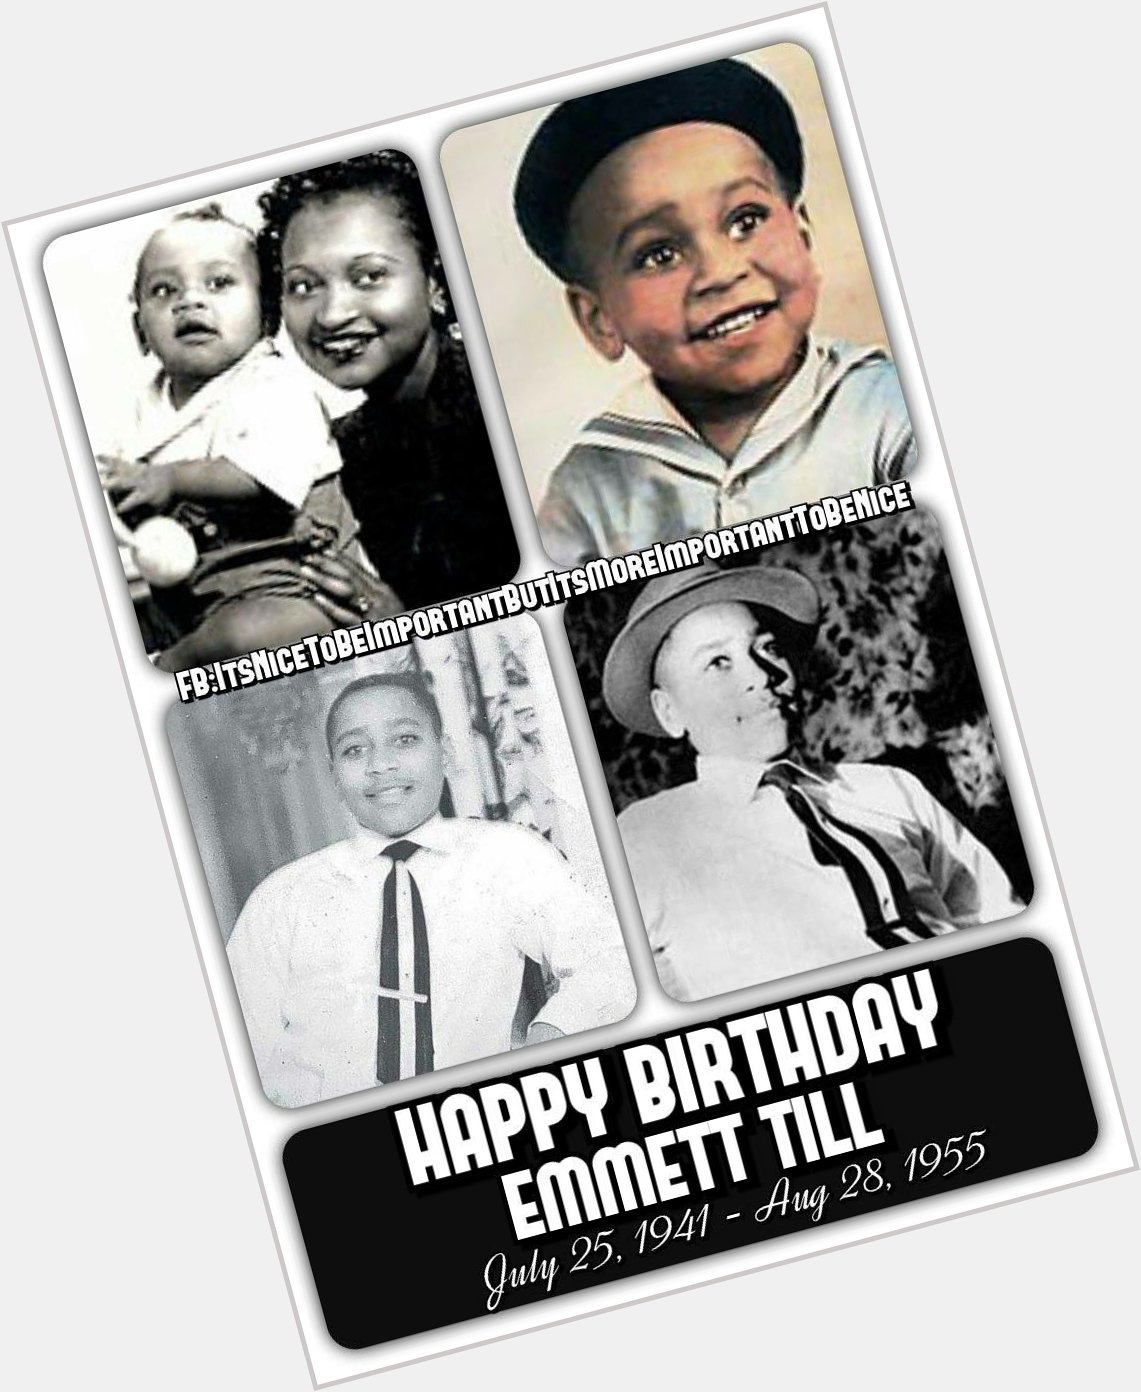 Happy Birthday Emmett Till 